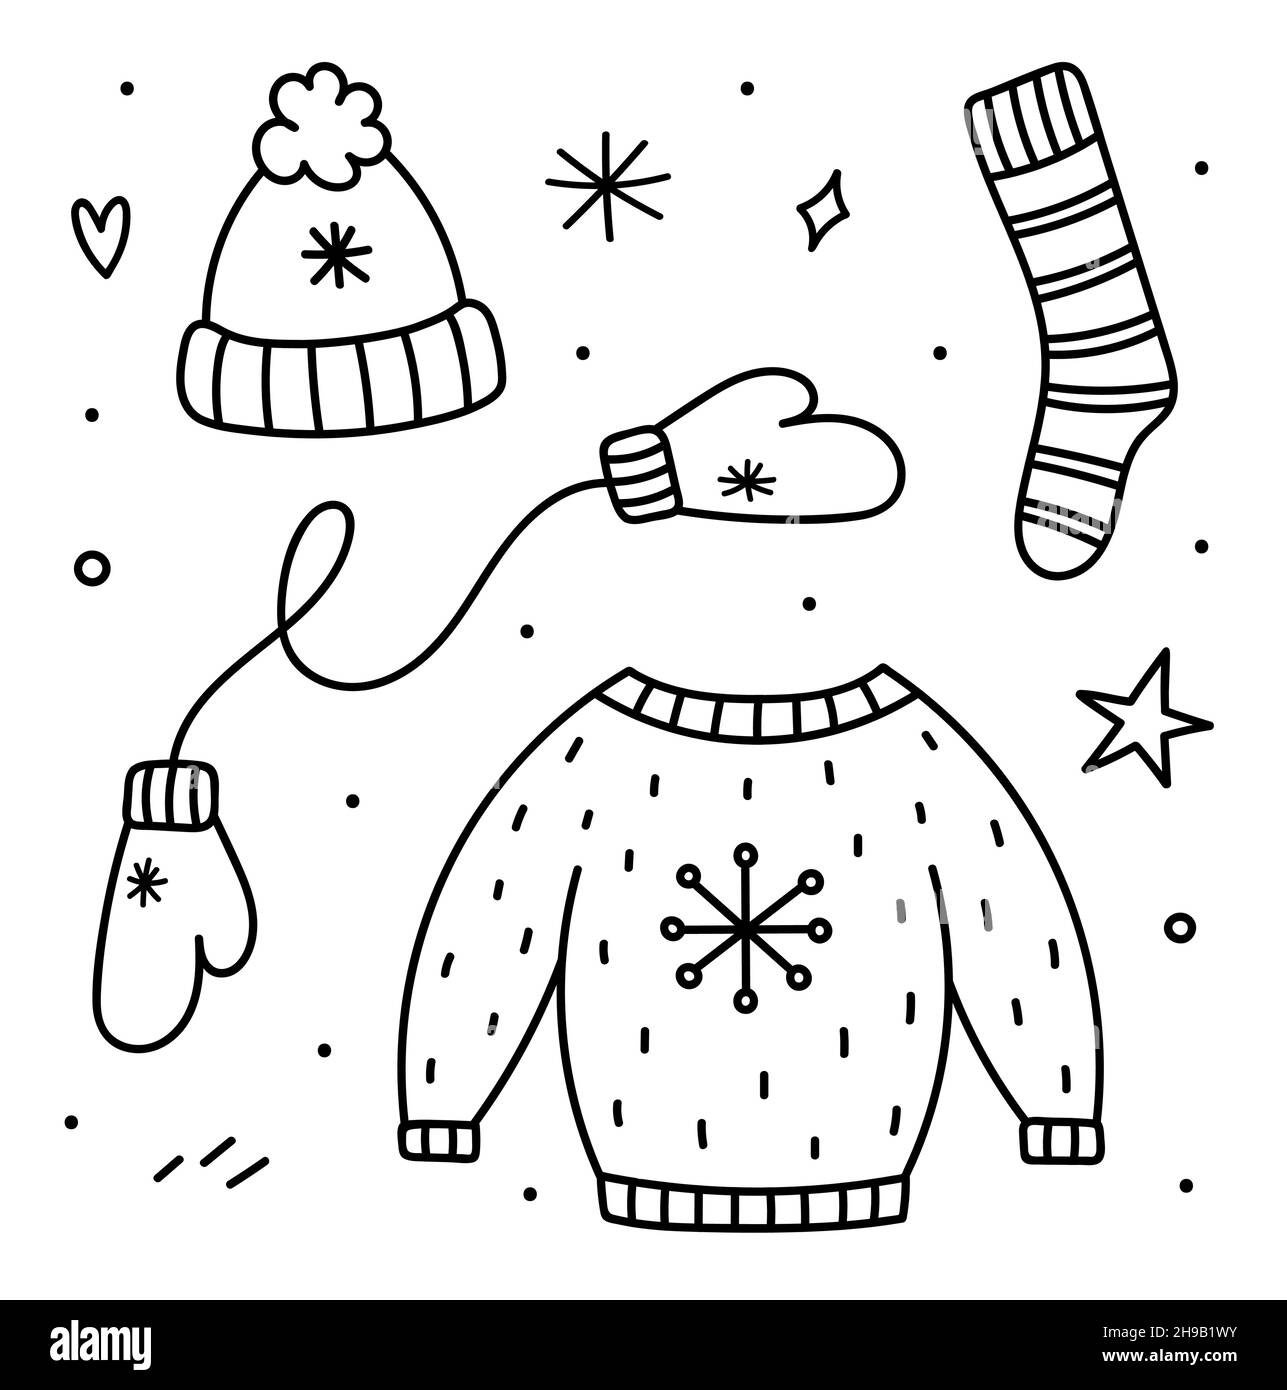 Ensemble mignon de vêtements d'hiver - un chapeau chaud, des moufles, des  chaussettes et un pull en maille.Illustration vectorielle dessinée à la  main, style doodle.Parfait pour les motifs de Noël et de